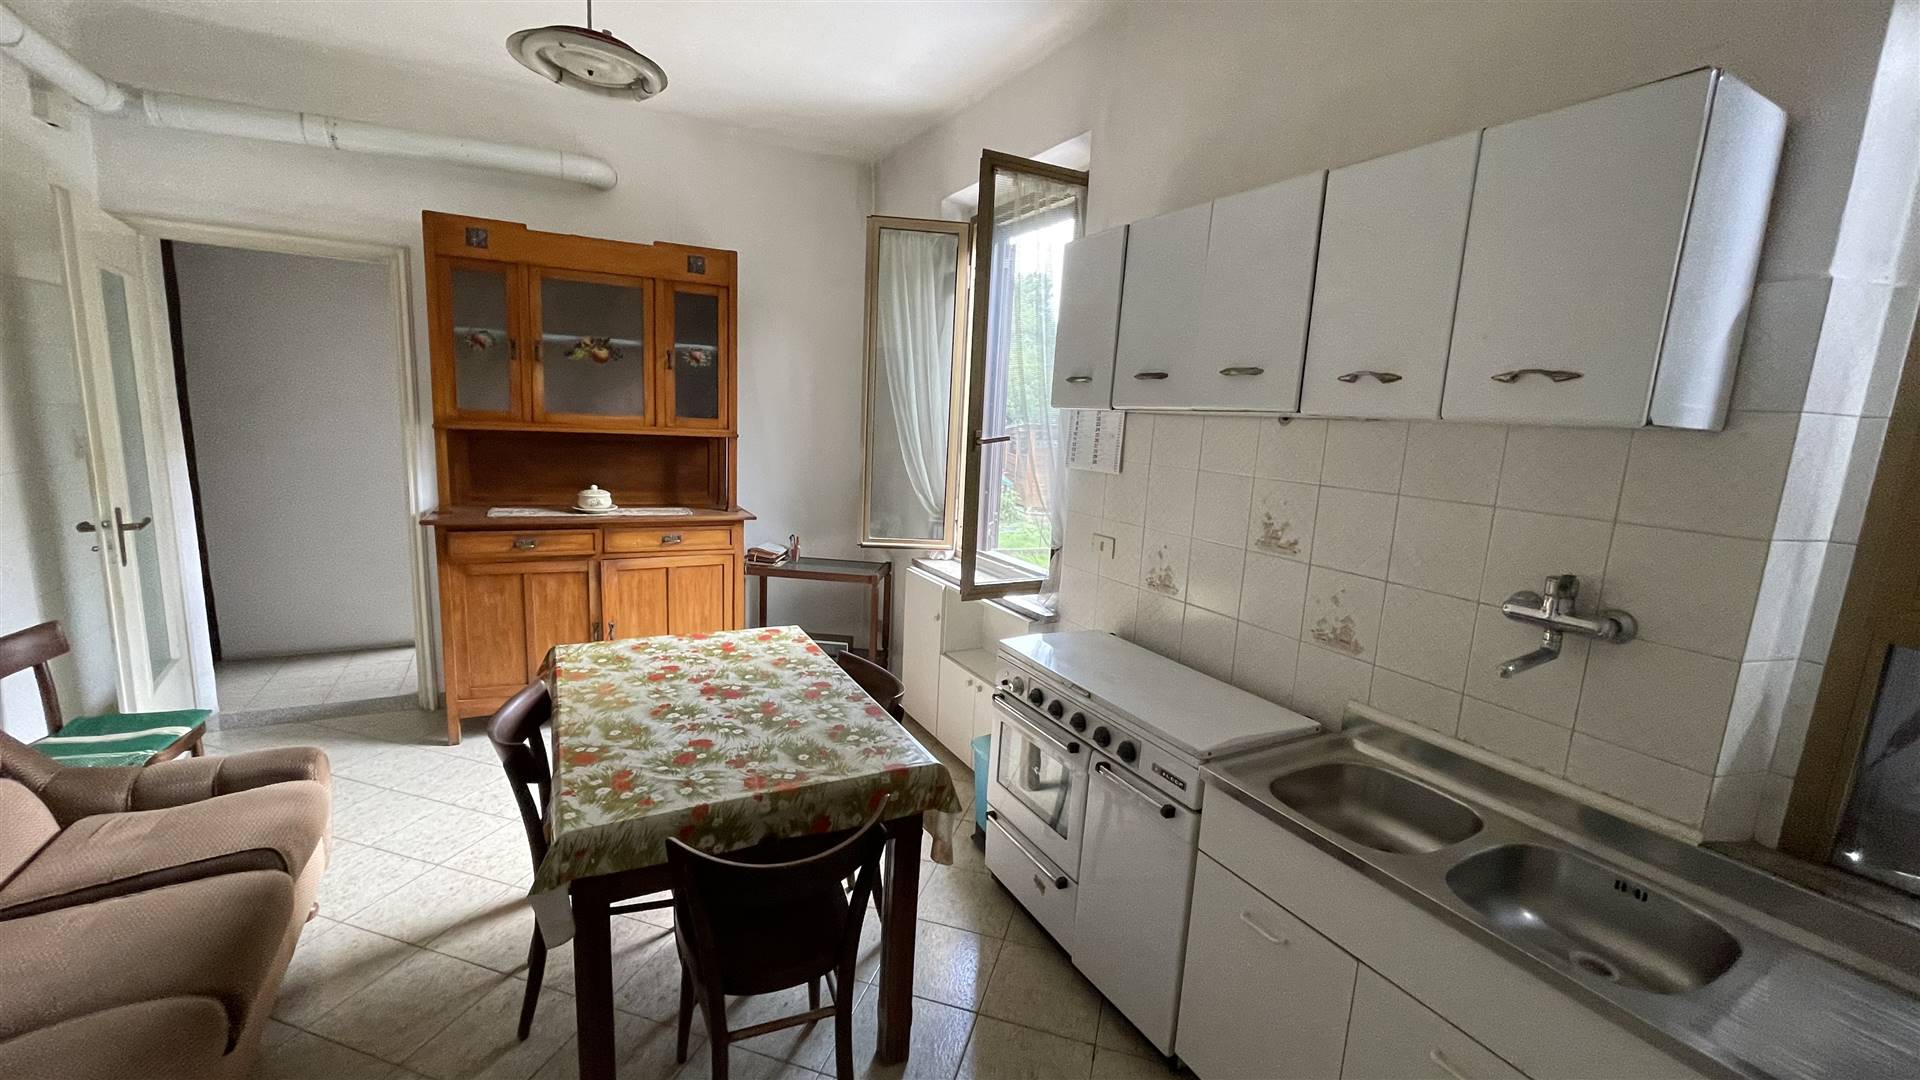 Appartamento in vendita a Biella, 4 locali, zona Località: PAVIGNANO / VAGLIO / COLMA, prezzo € 27.000 | PortaleAgenzieImmobiliari.it